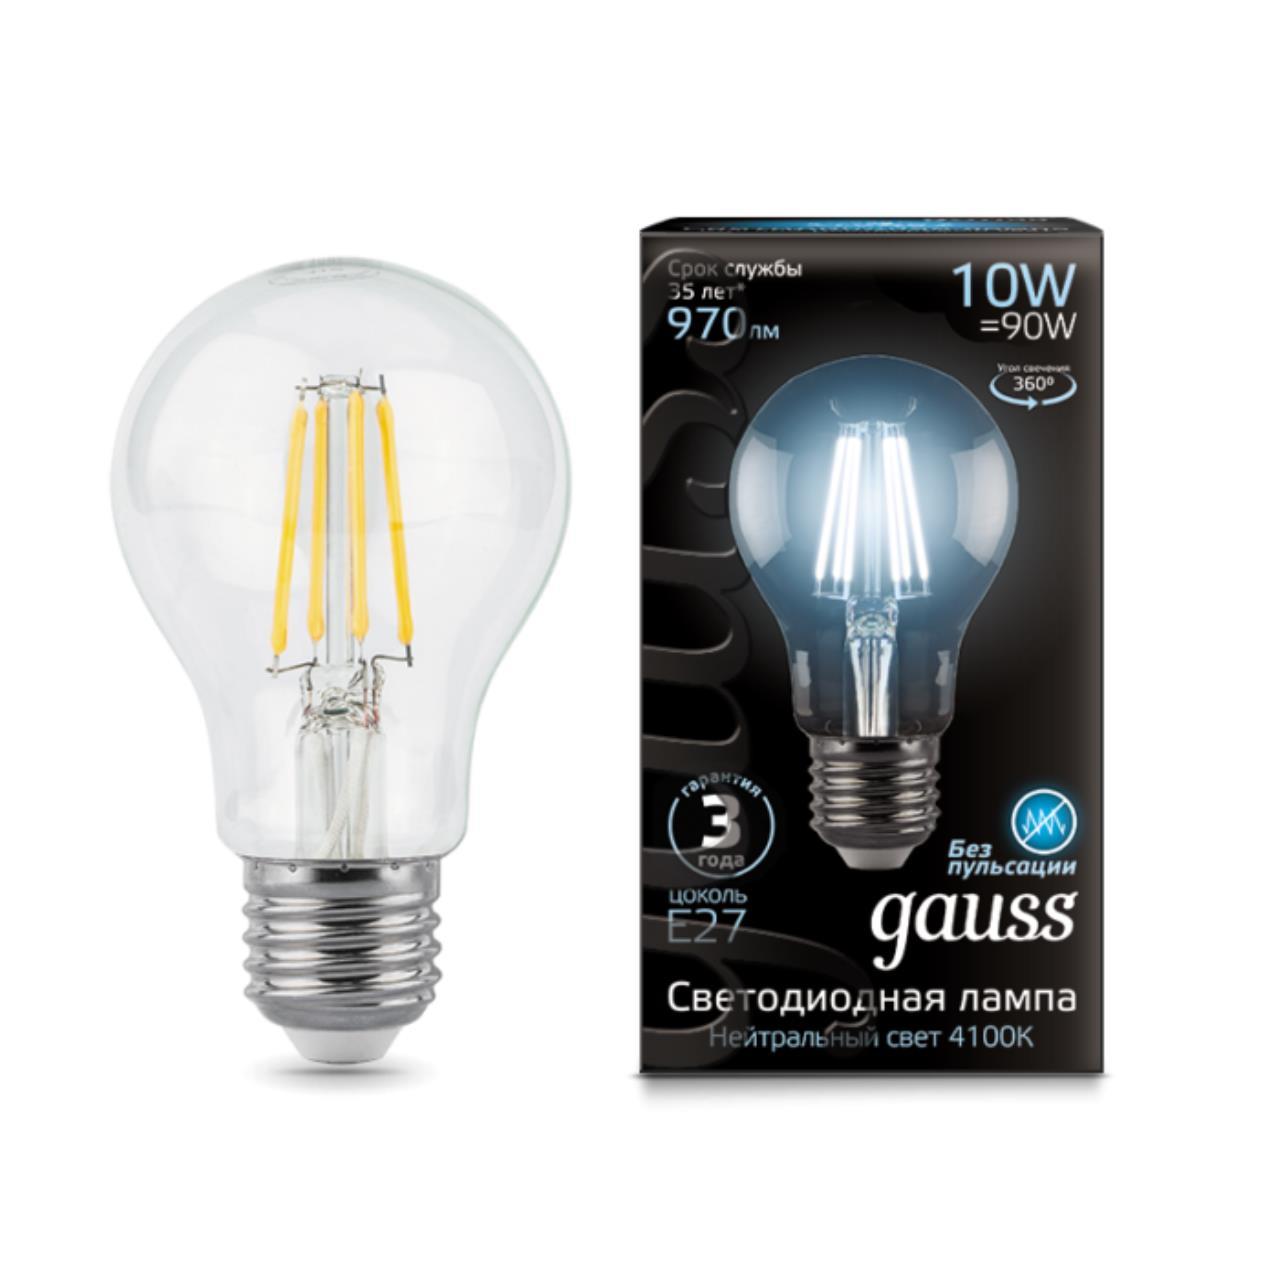 102802210 Лампа Gauss LED Filament A60 E27 10W 970lm 4100К 1/10/40